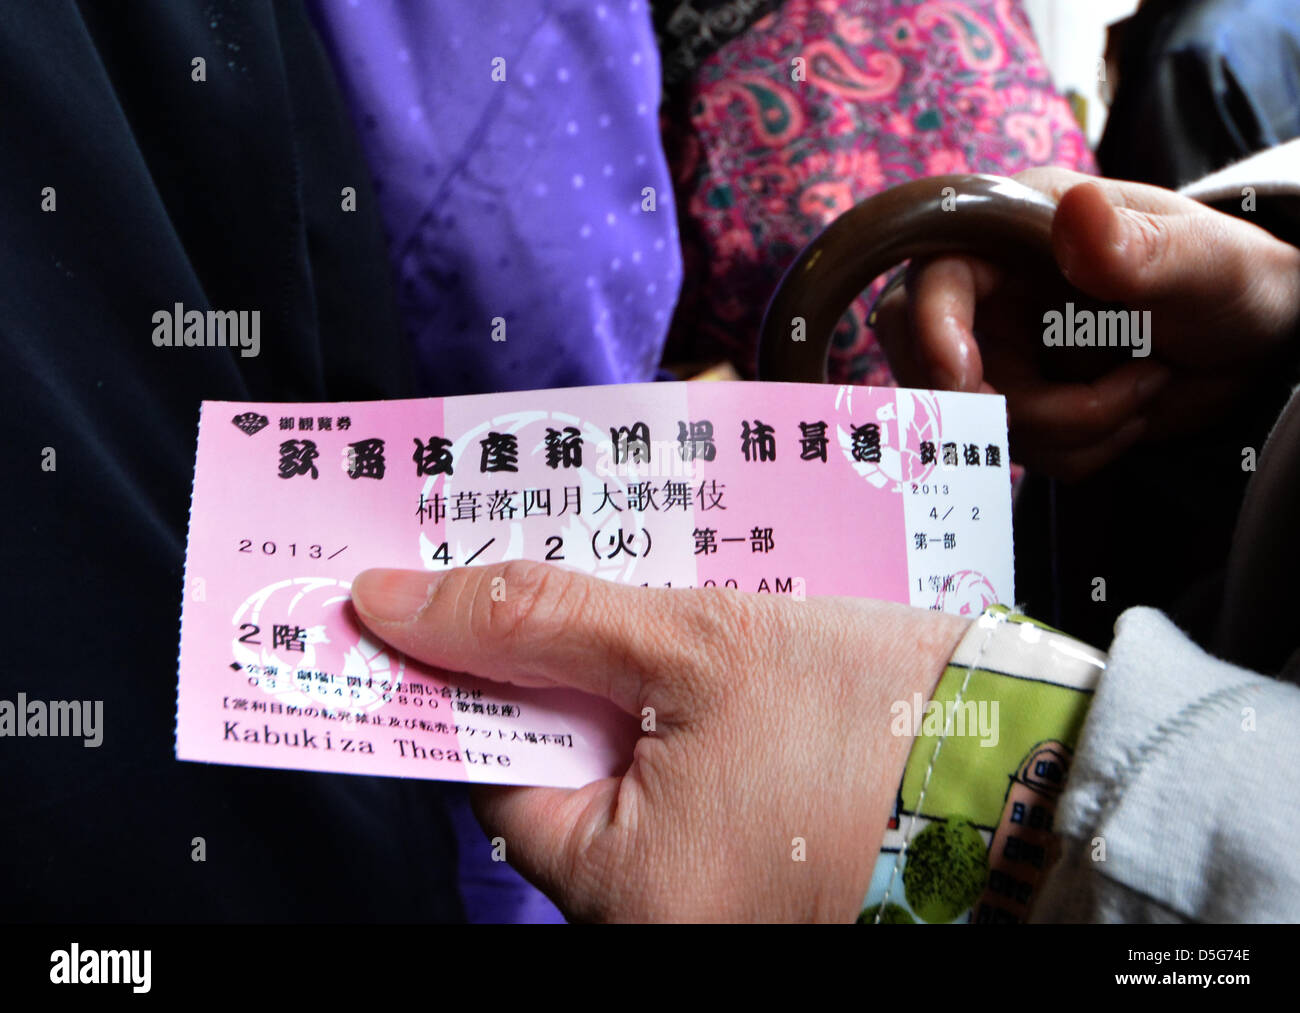 Le 2 avril 2013, Tokyo, Japon - Avec le ticket dans sa main, une femme  attend pour l'ouverture de la nouvelle version de théâtre Kabuki de Tokyo,  shopping-divertissement de Ginza, le mardi,